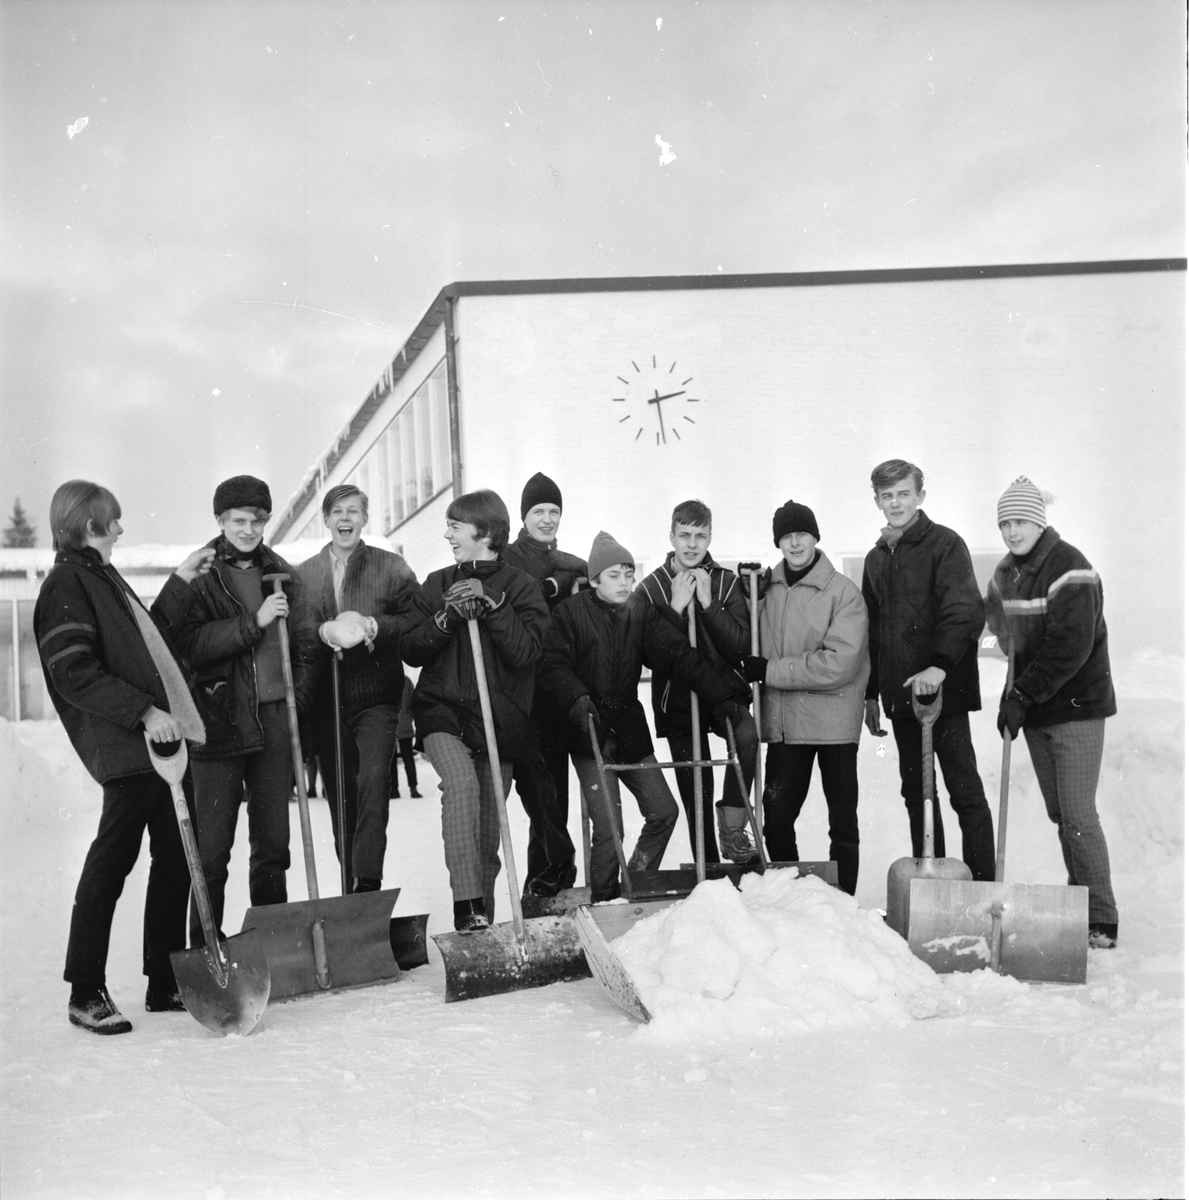 Arbrå,
Centralskolans aktion för ferieresa,
Februari 1967